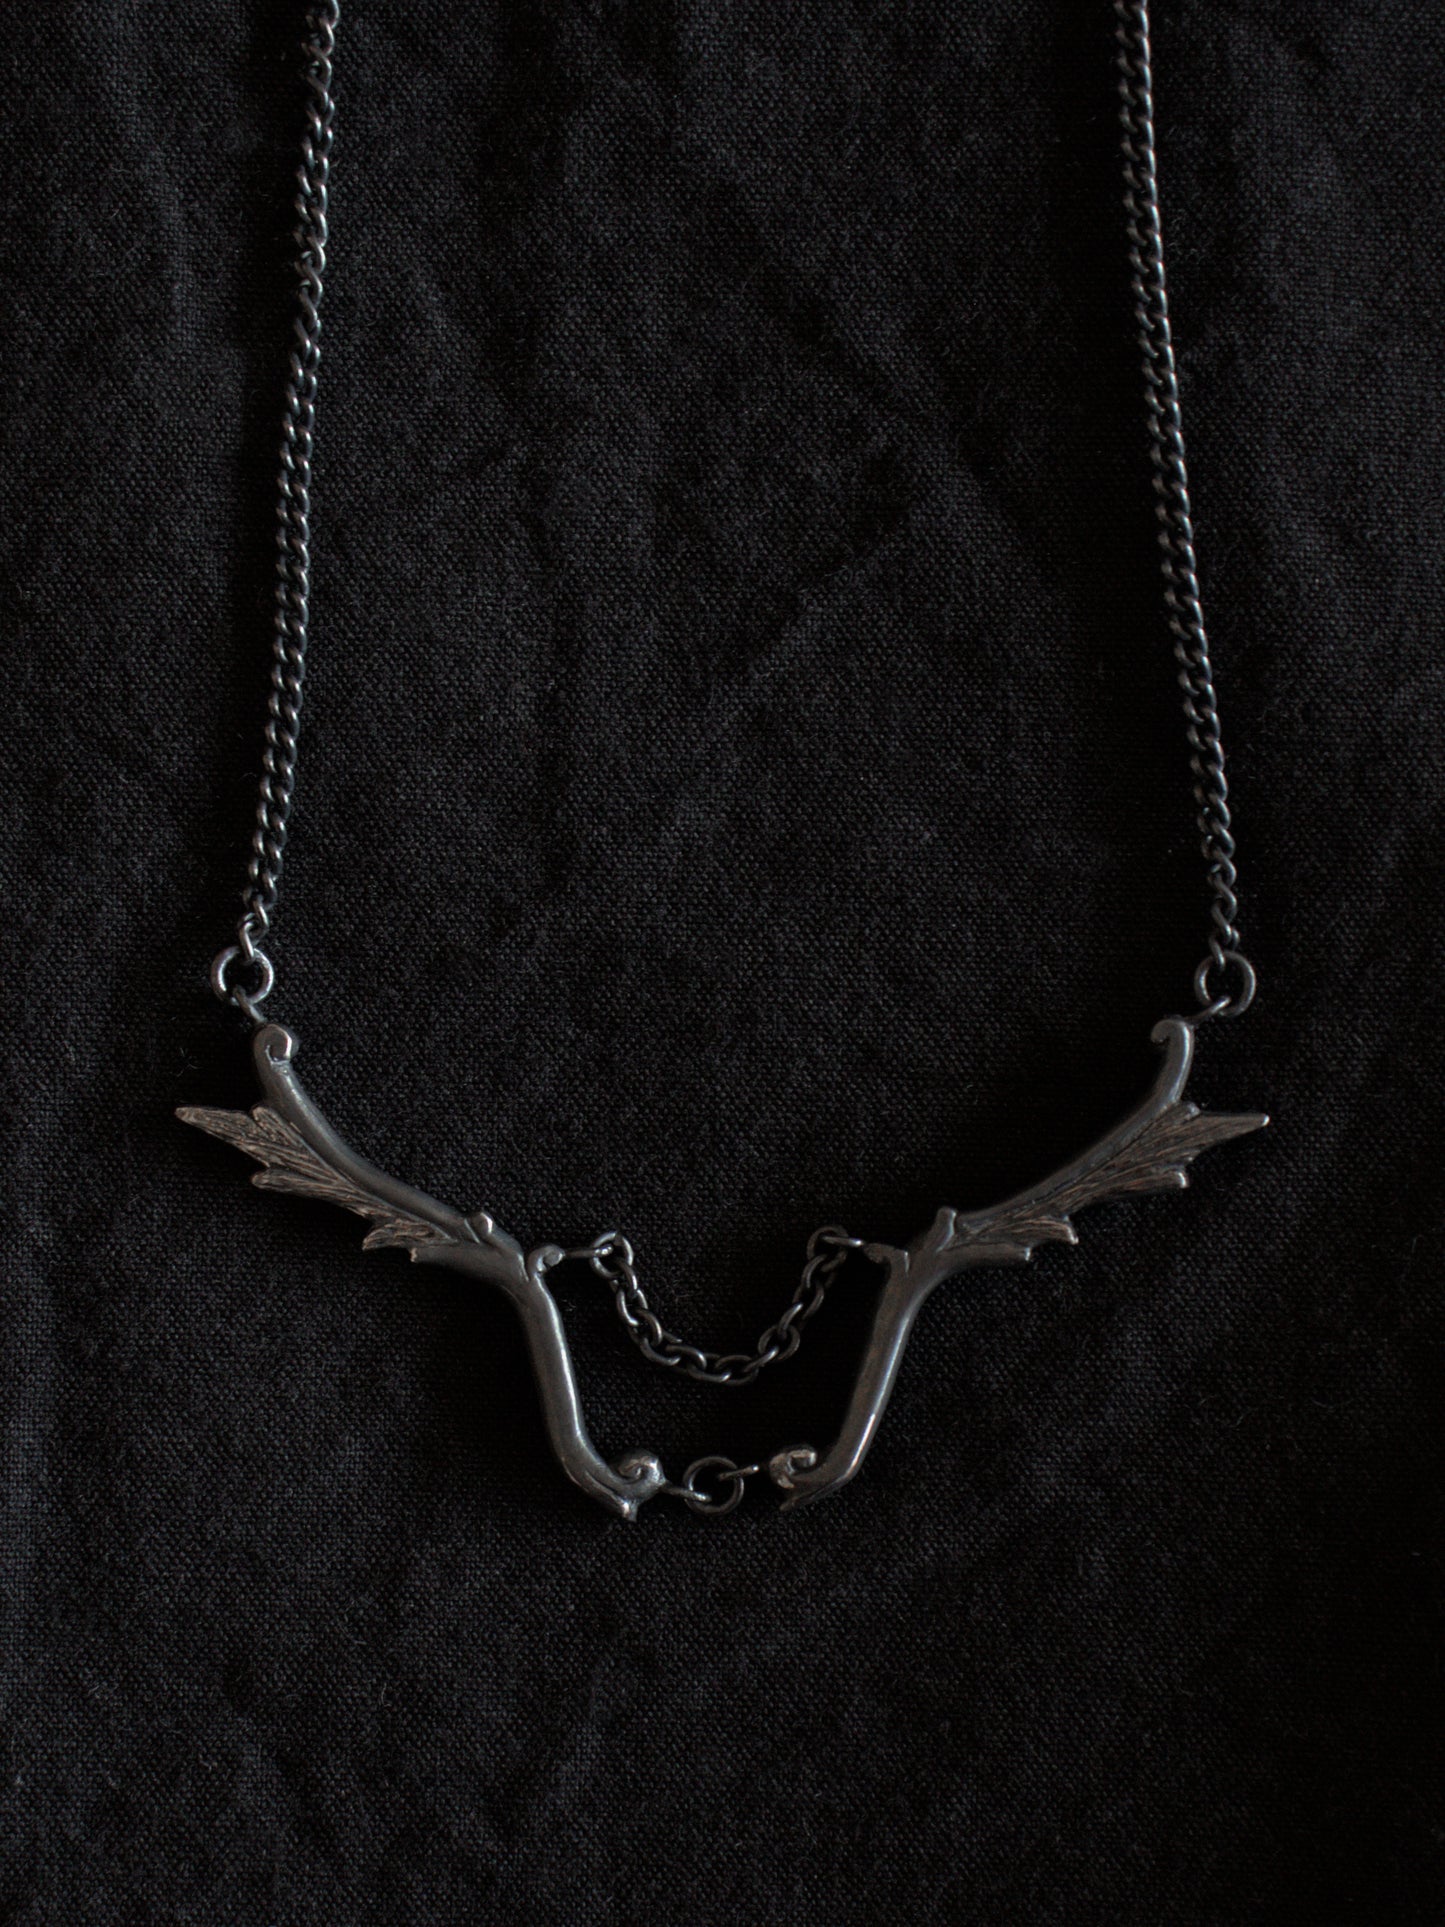 Angelus necklace